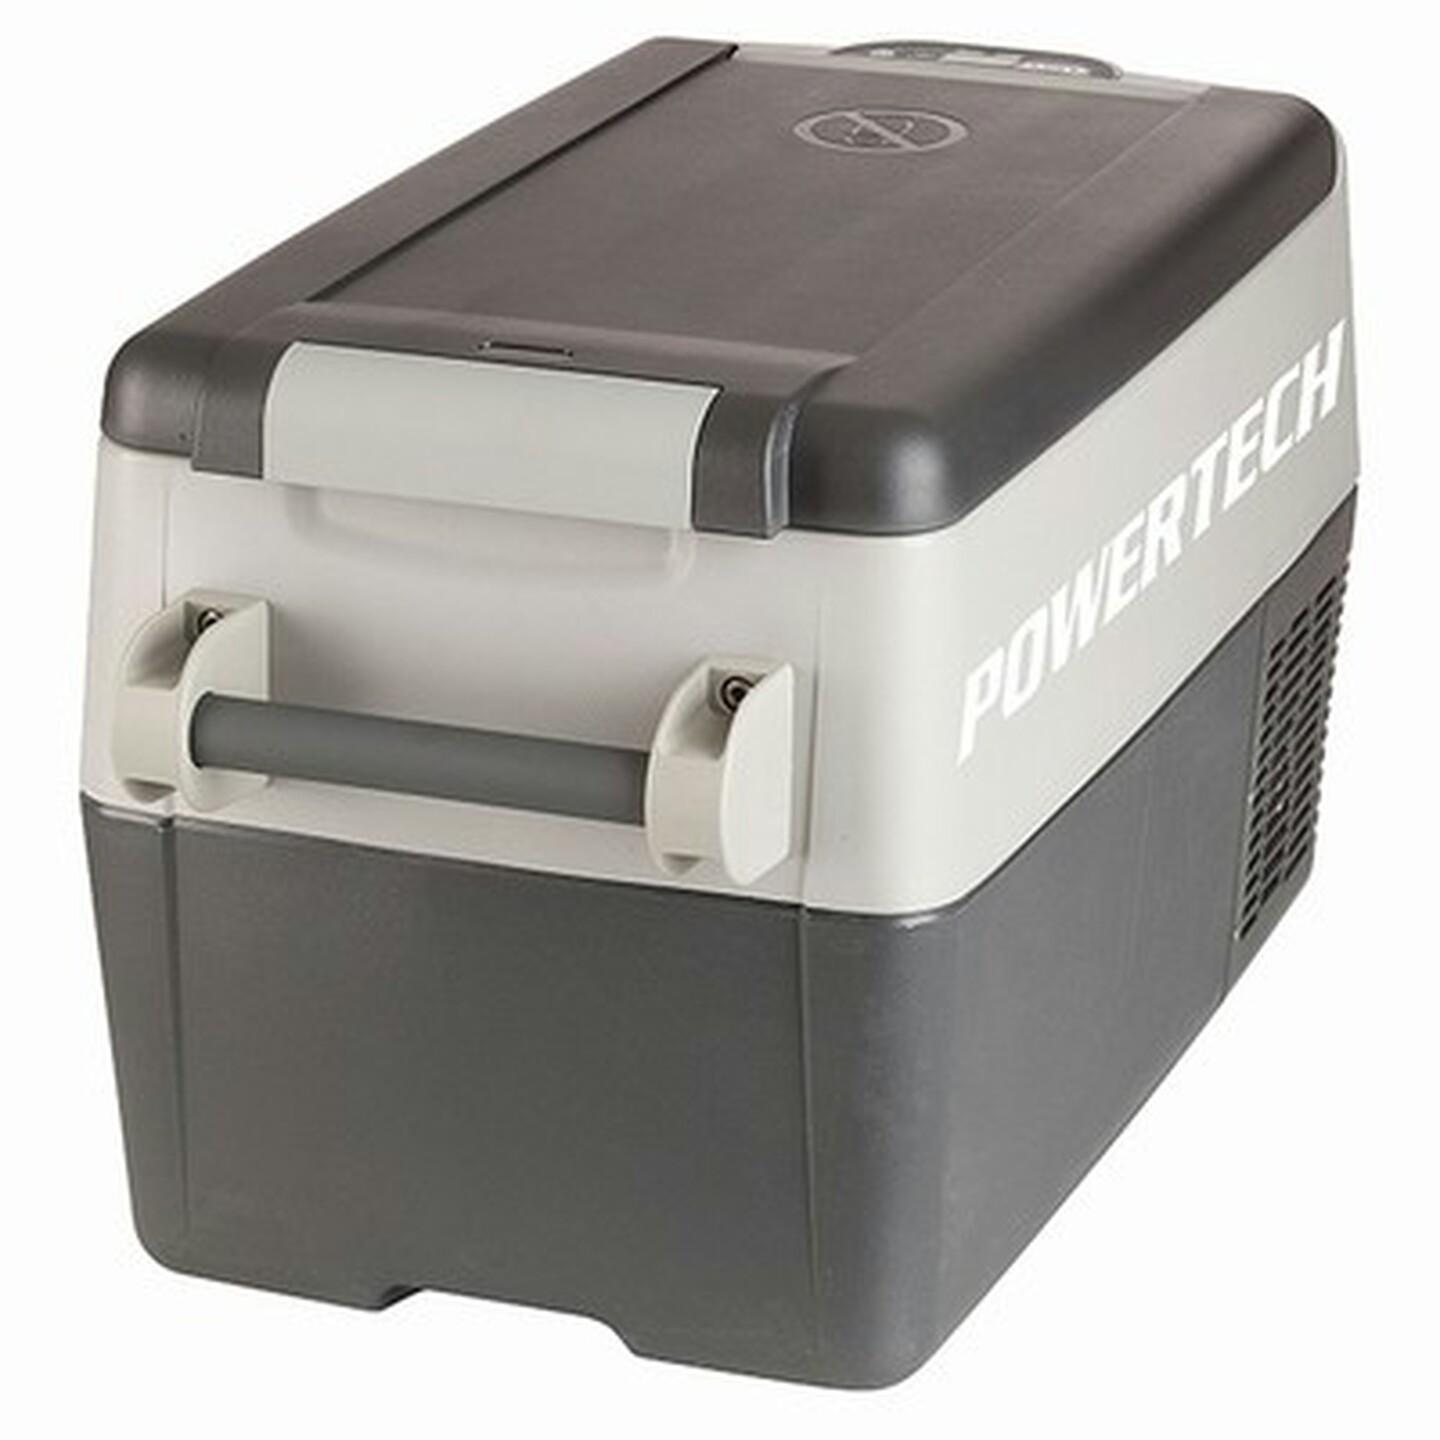 Powertech Portable 40L Fridge/Freezer